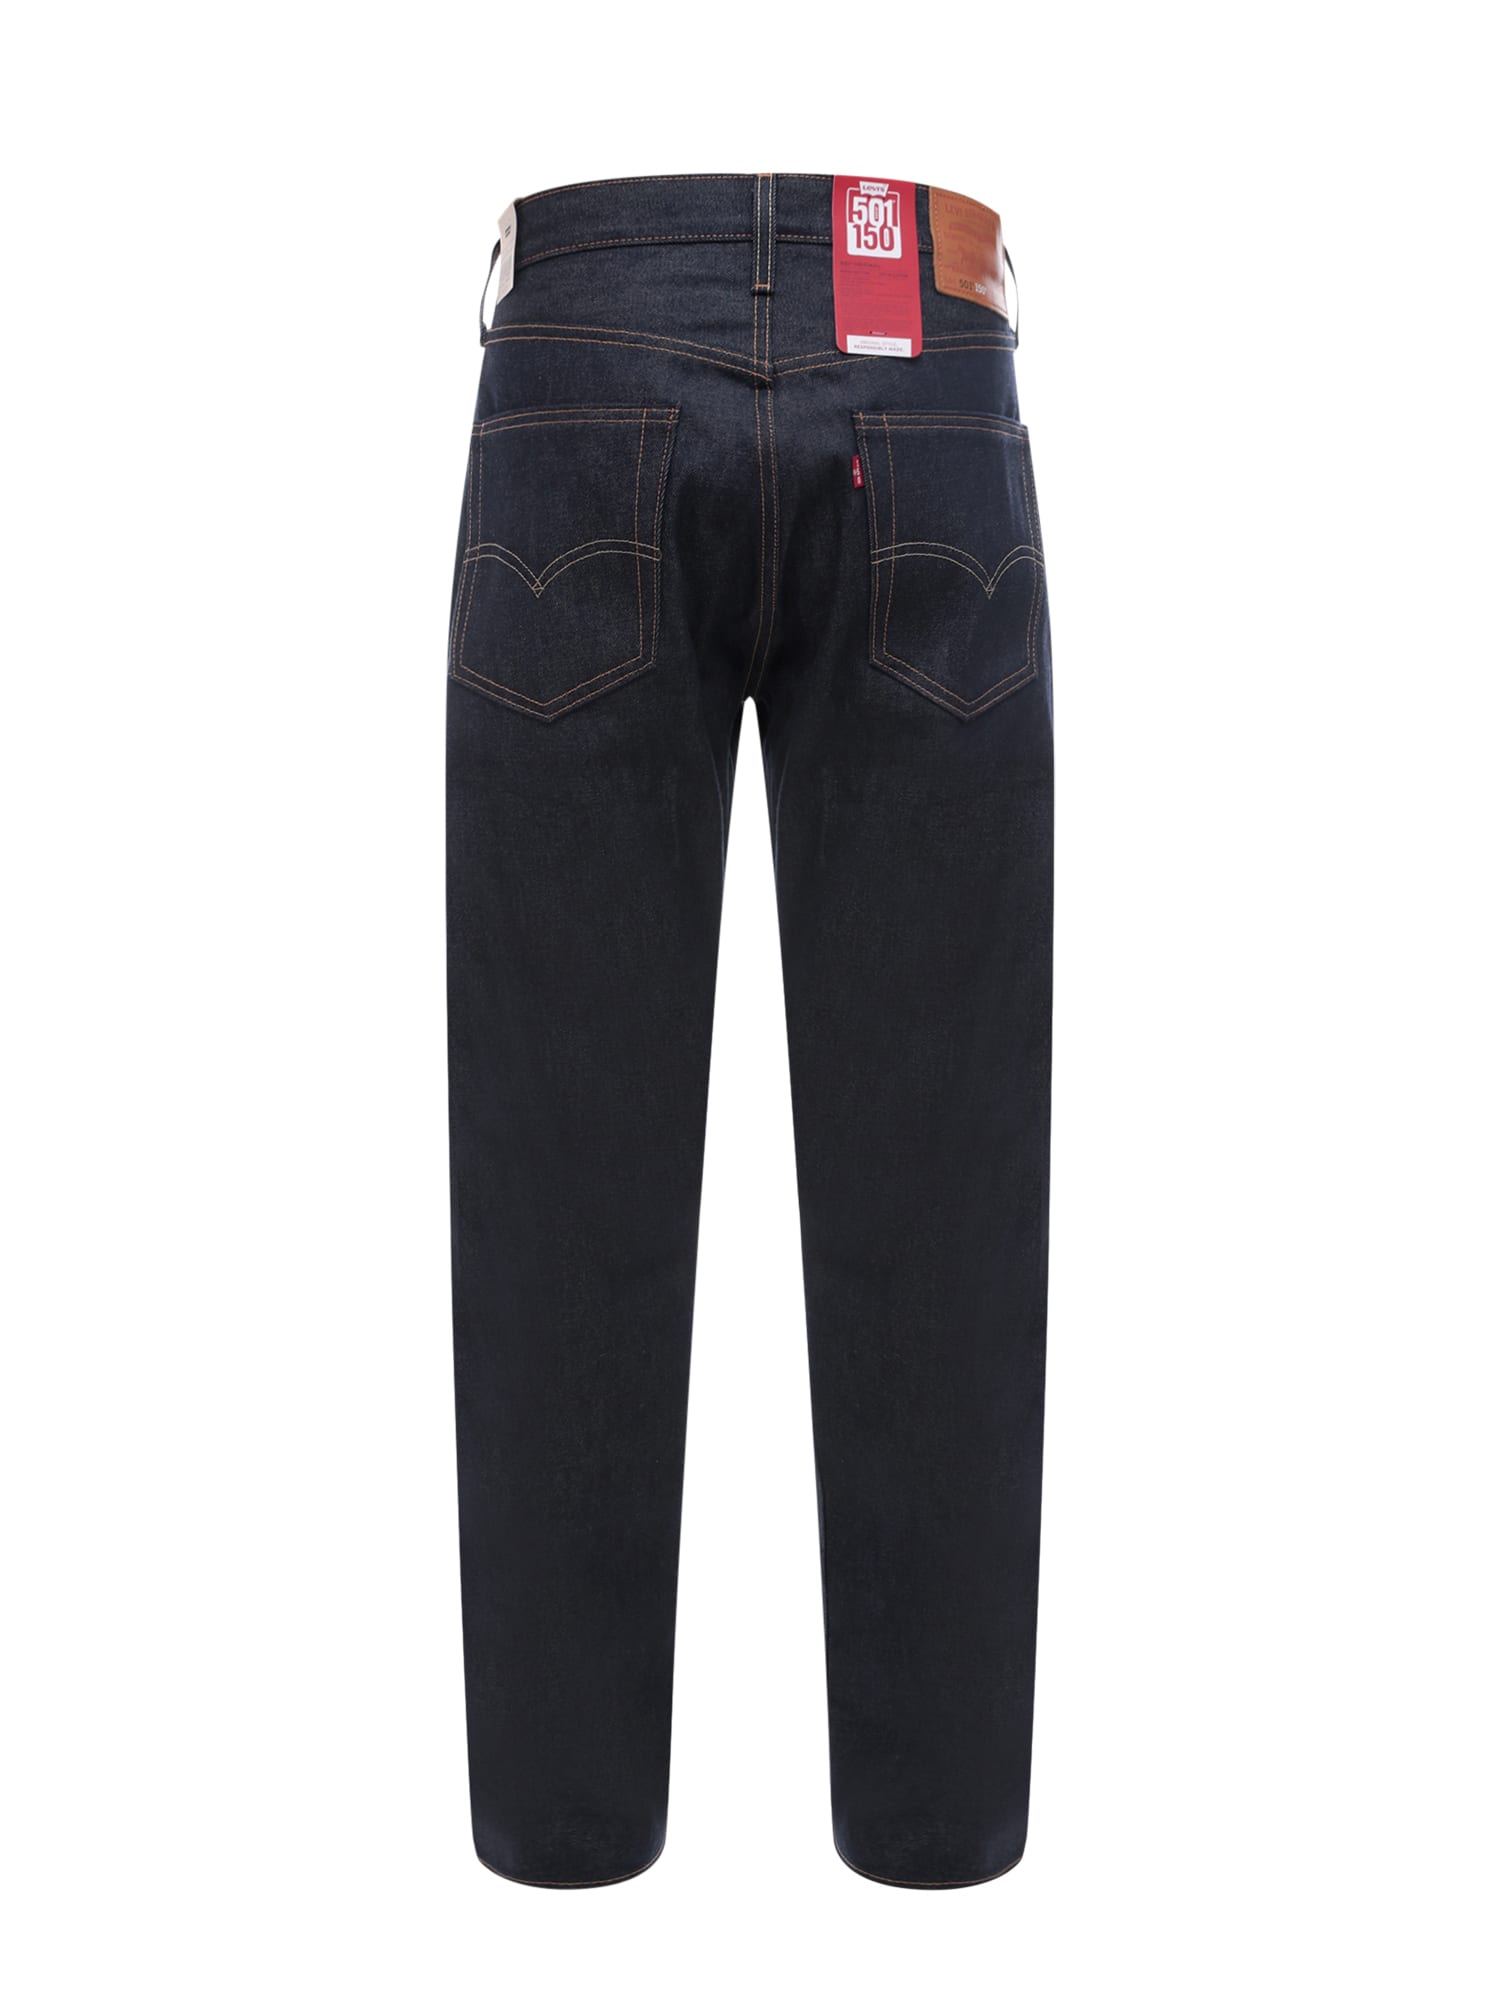 Shop Levi's 501 Jeans